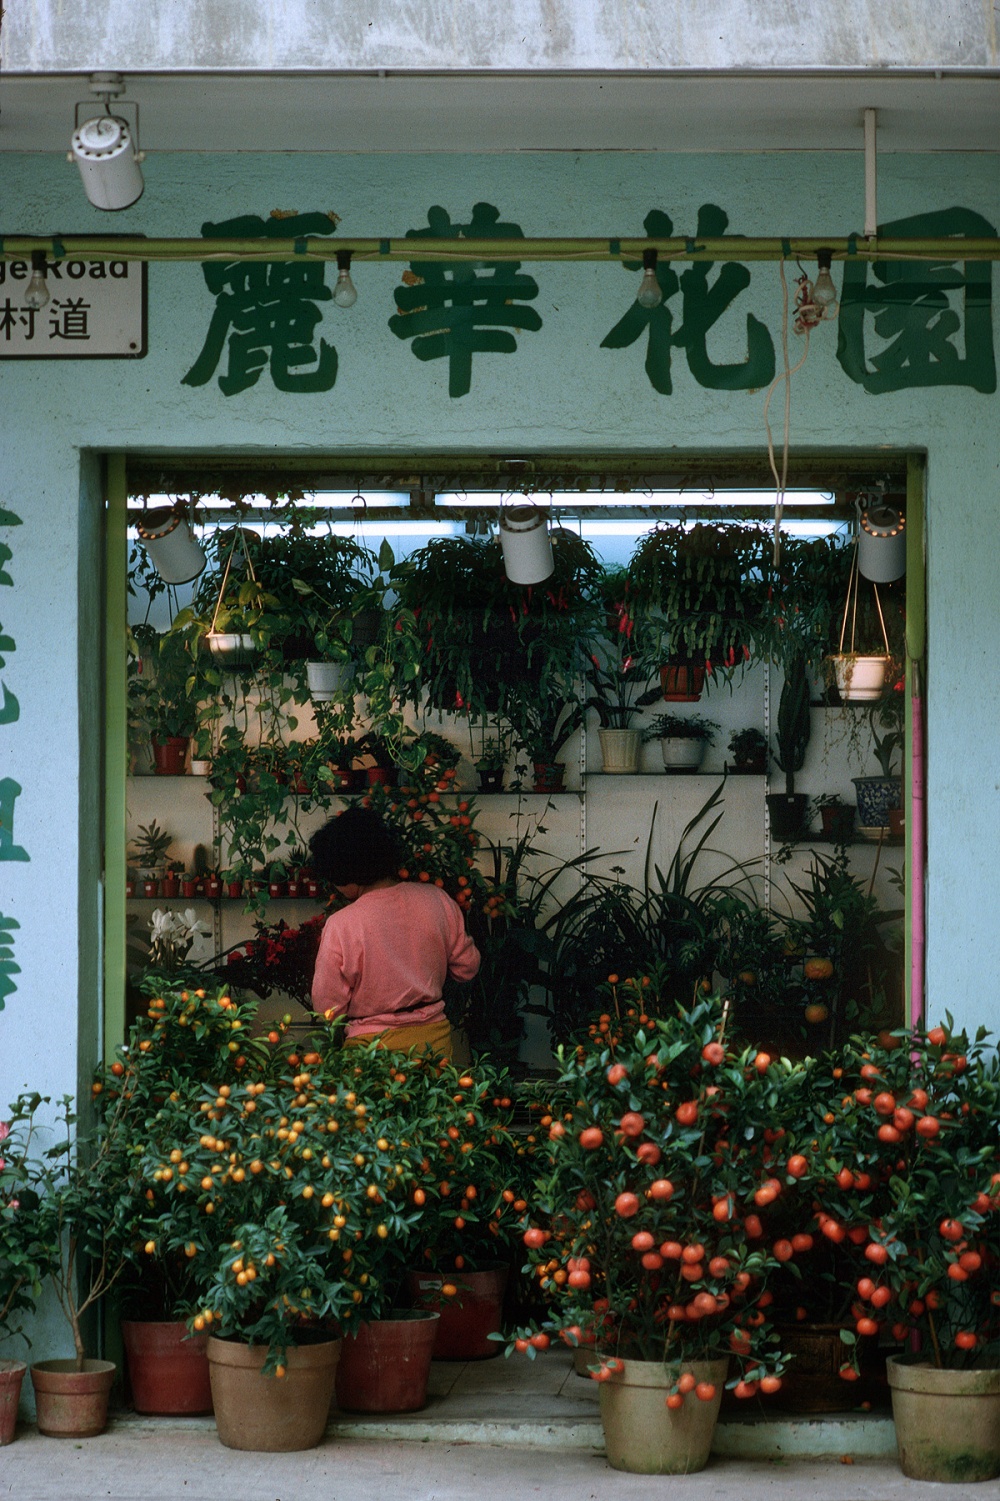 bill-hocker-wan-chai-hong-kong-1988